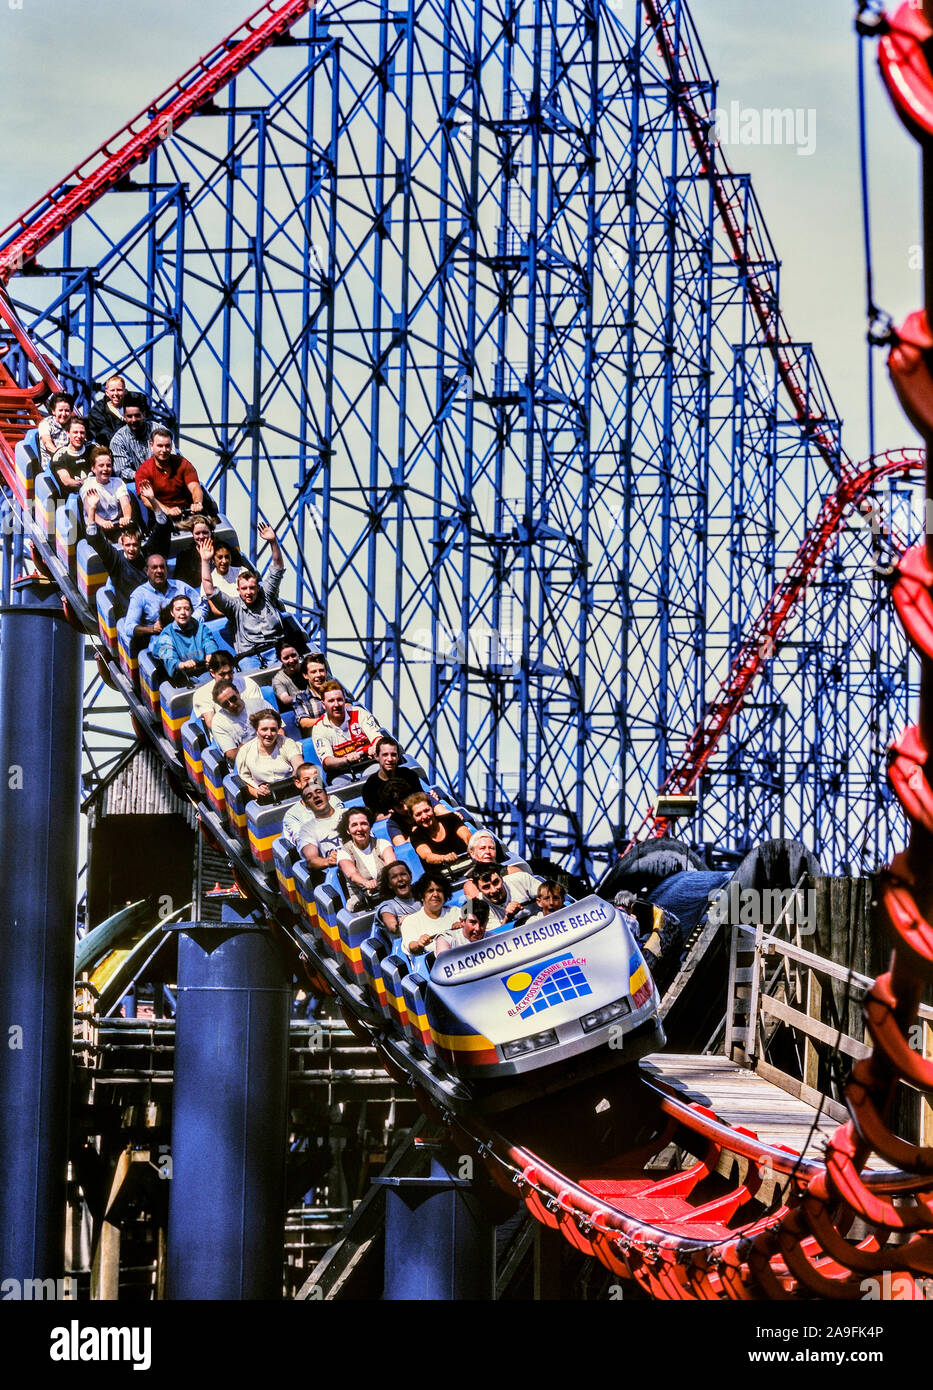 Il grande rullo di acciaio coaster. Blackpool Pleasure Beach. Lancashire. Inghilterra, Regno Unito Foto Stock